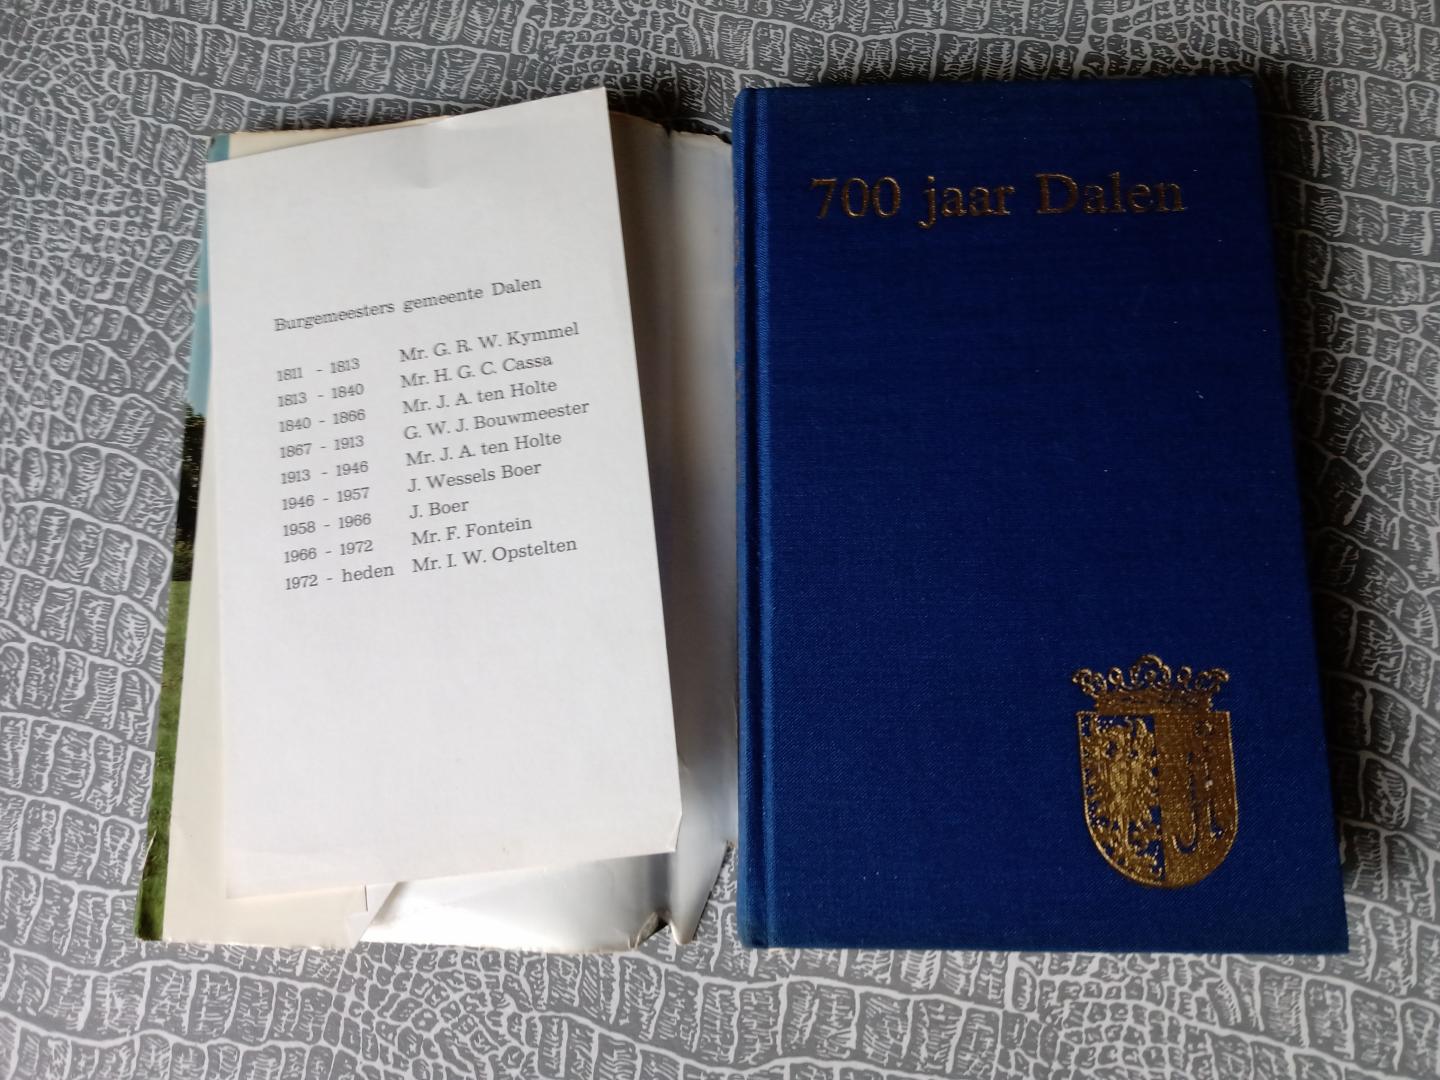 Minderhoud,H.D. - 700 jaar Dalen. Historisch overzicht van de geschiedenis van de gemeente Dalen.